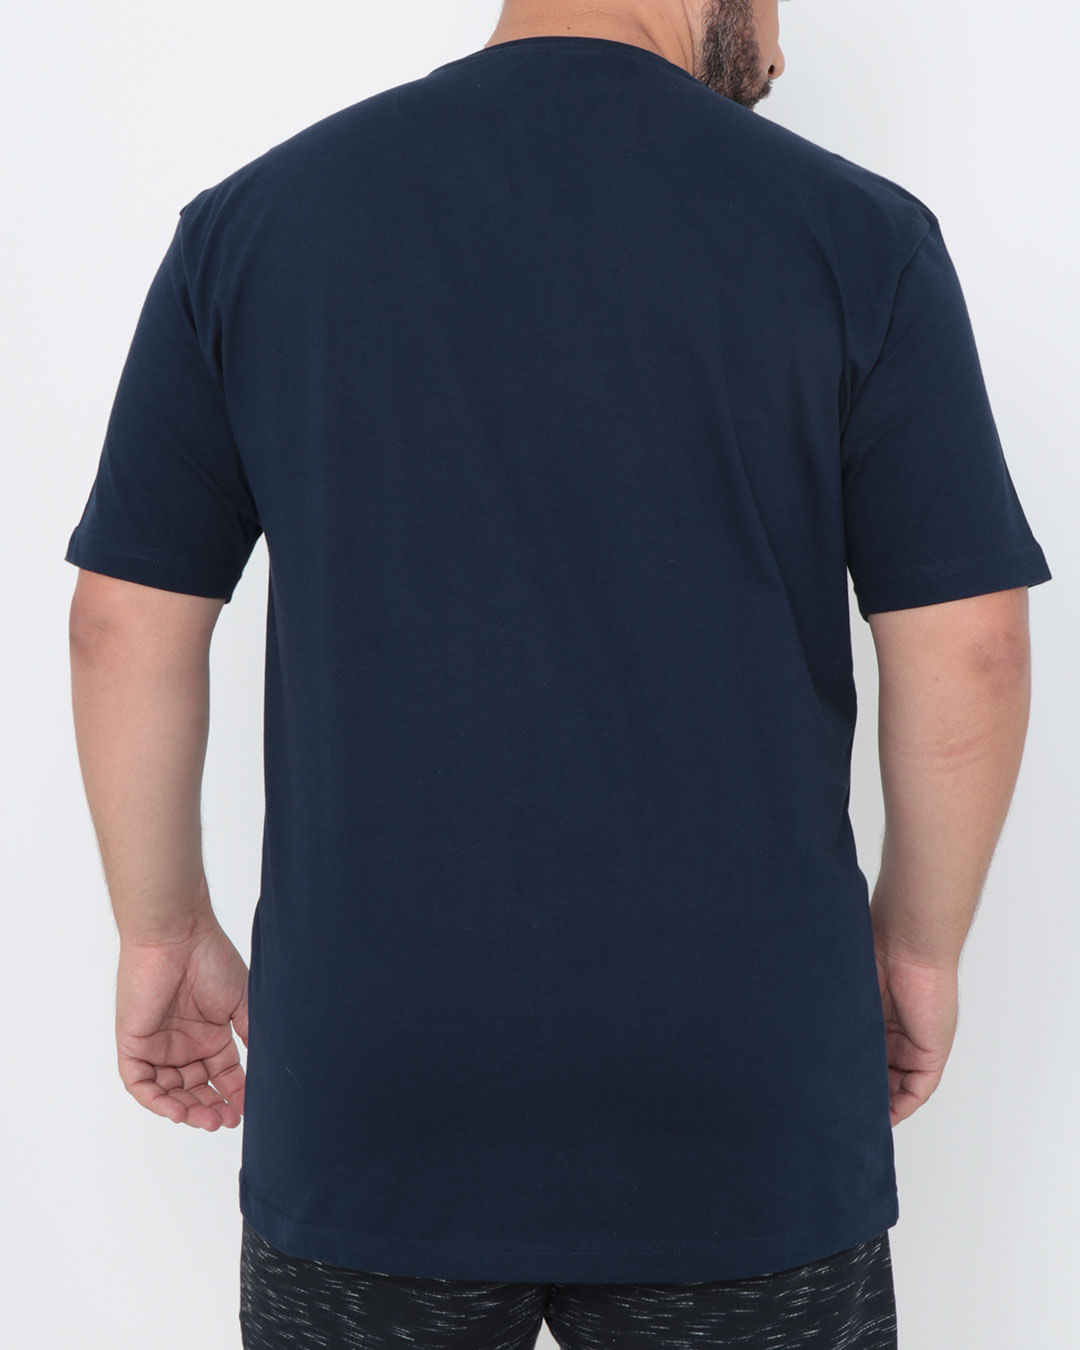 Camiseta-Plus-Size-Manga-Curta-Recorte-Azul-Marinho